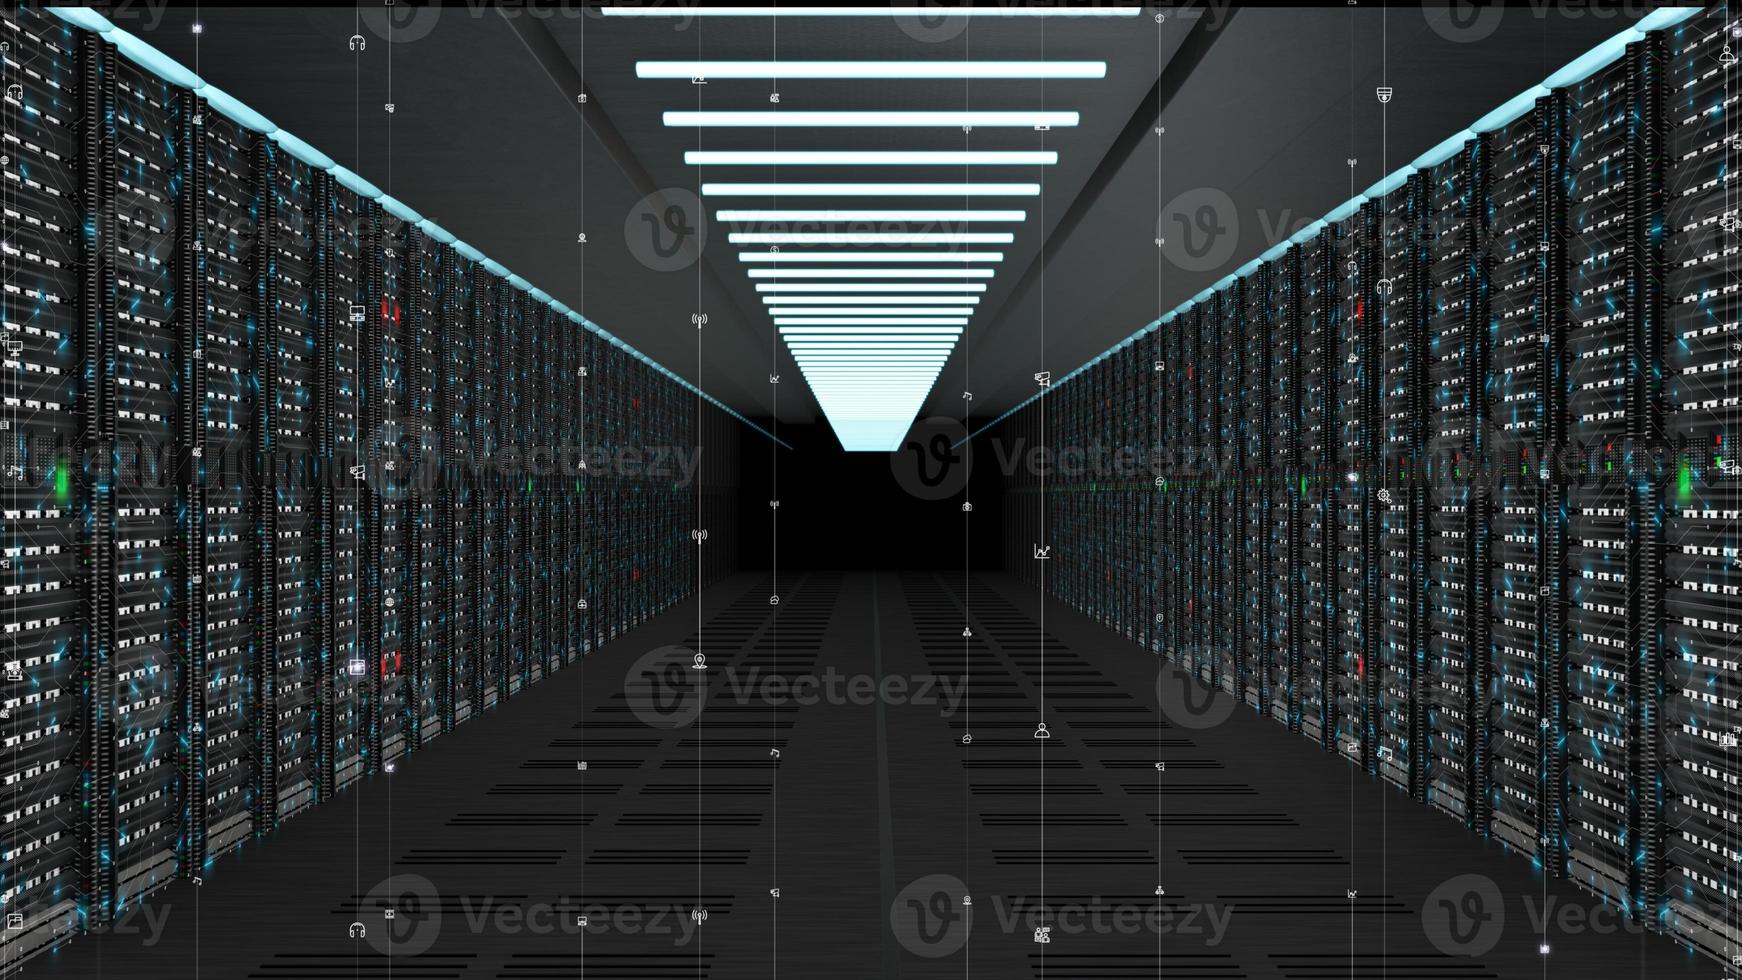 serveurs de réseau de données numériques dans une salle de serveurs d'un centre de données ou d'un fai avec transfert de données à haut débit par circuit électrique photo